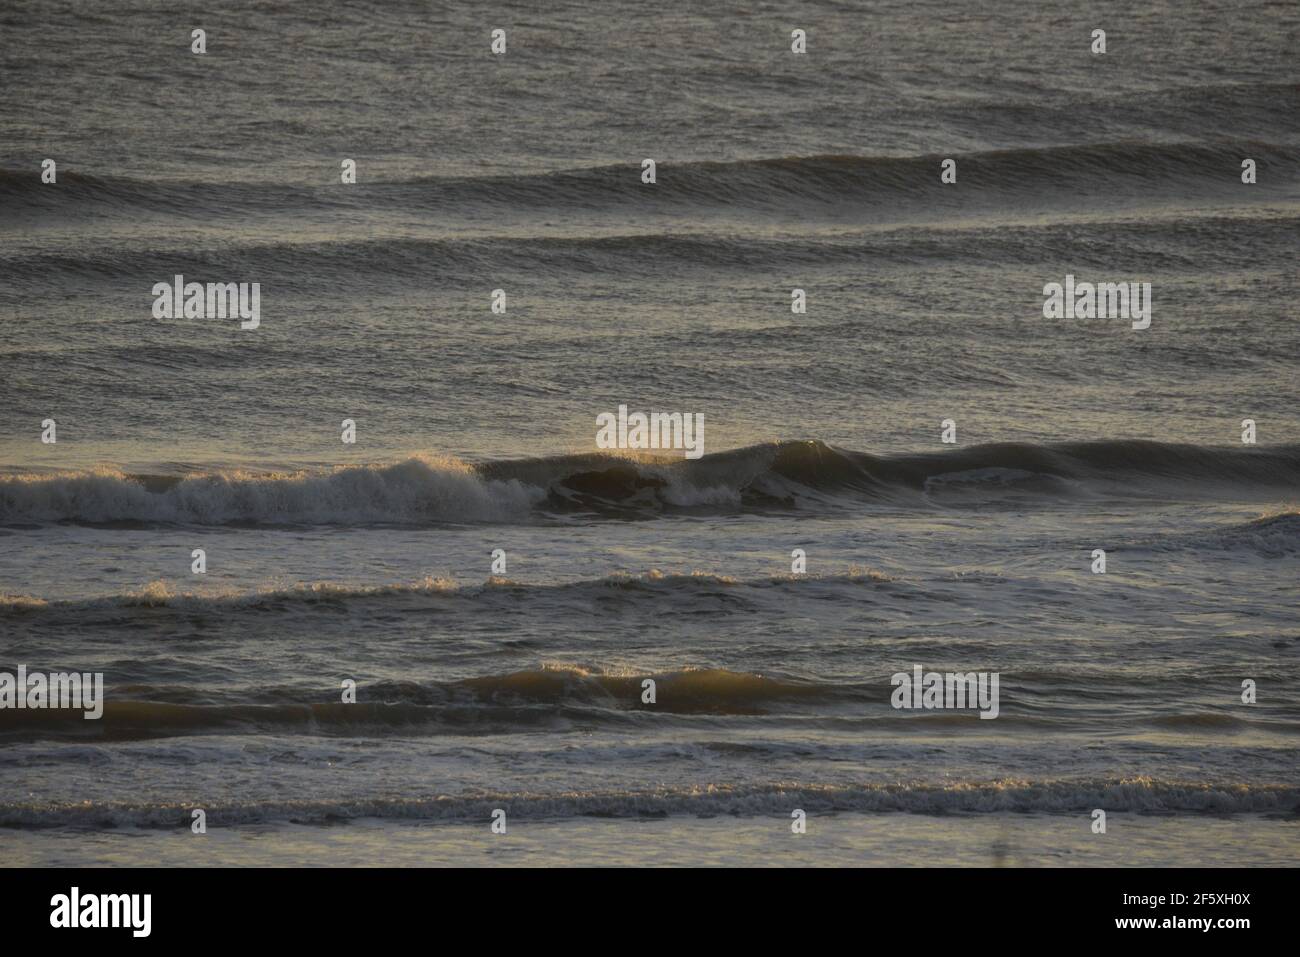 Beach and ocean waves on a Texas beach Stock Photo